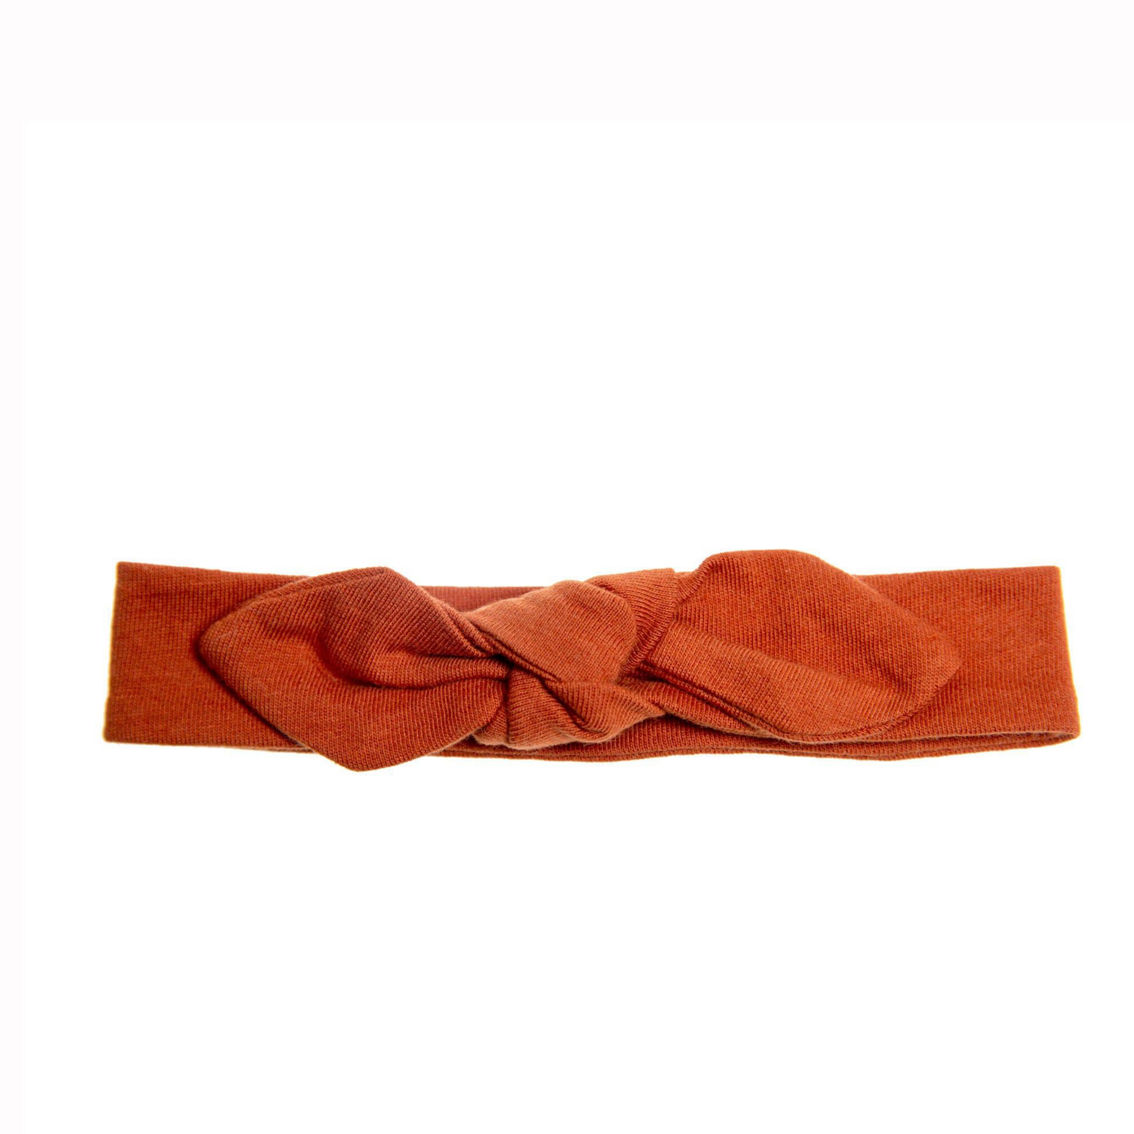 Headband and Long Sleeve Sleeper Sack Bundle - Image 3 of 4